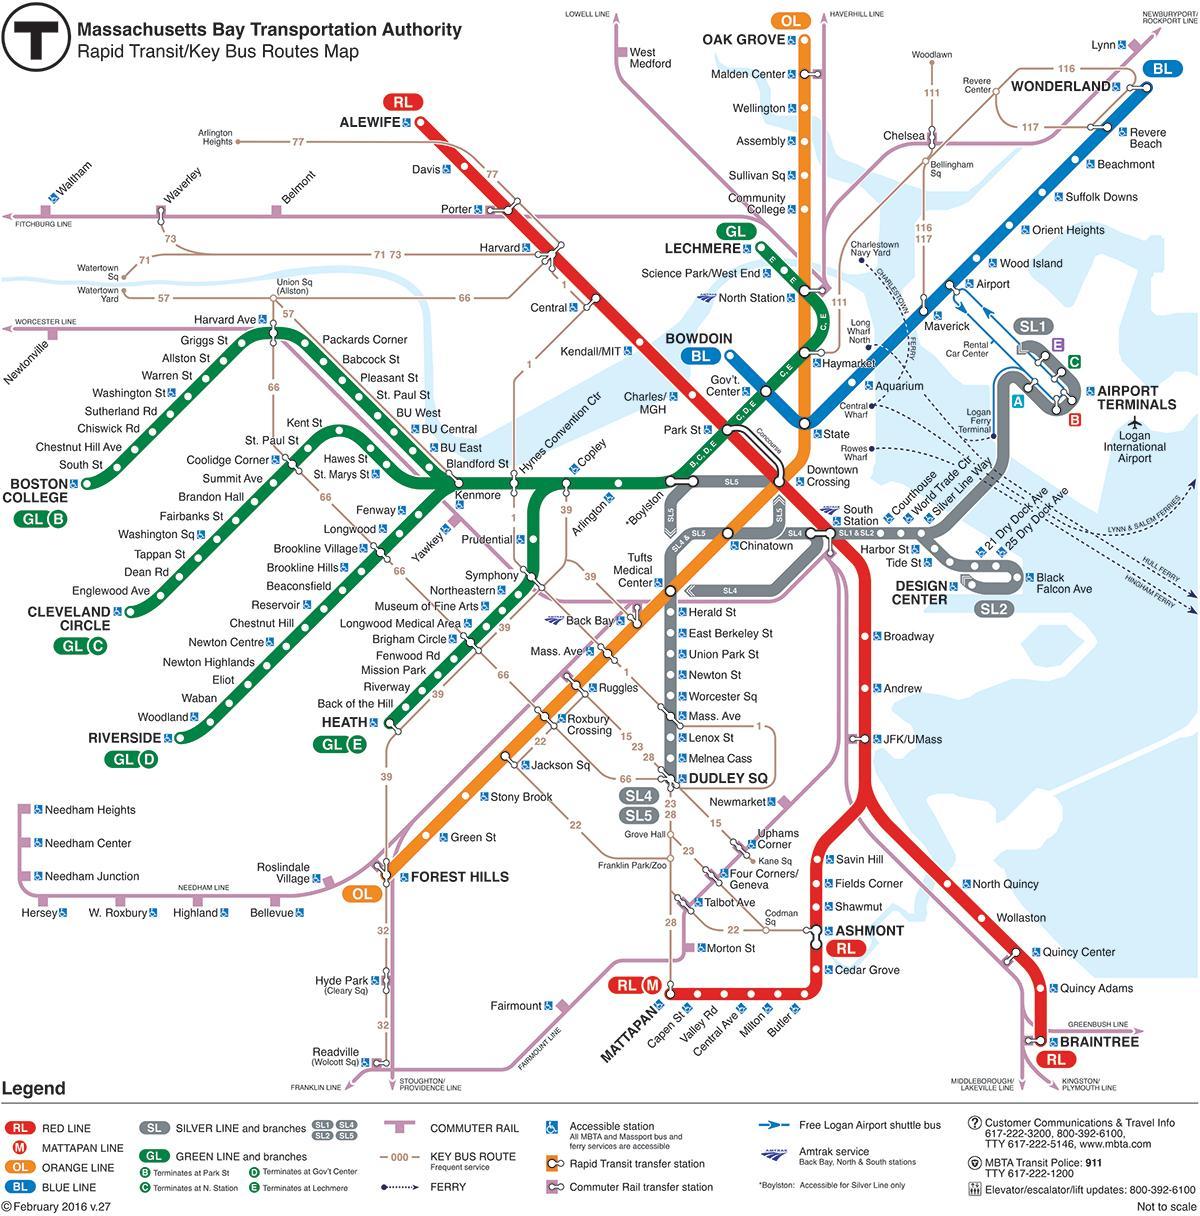 ٹی ٹرین بوسٹن کا نقشہ